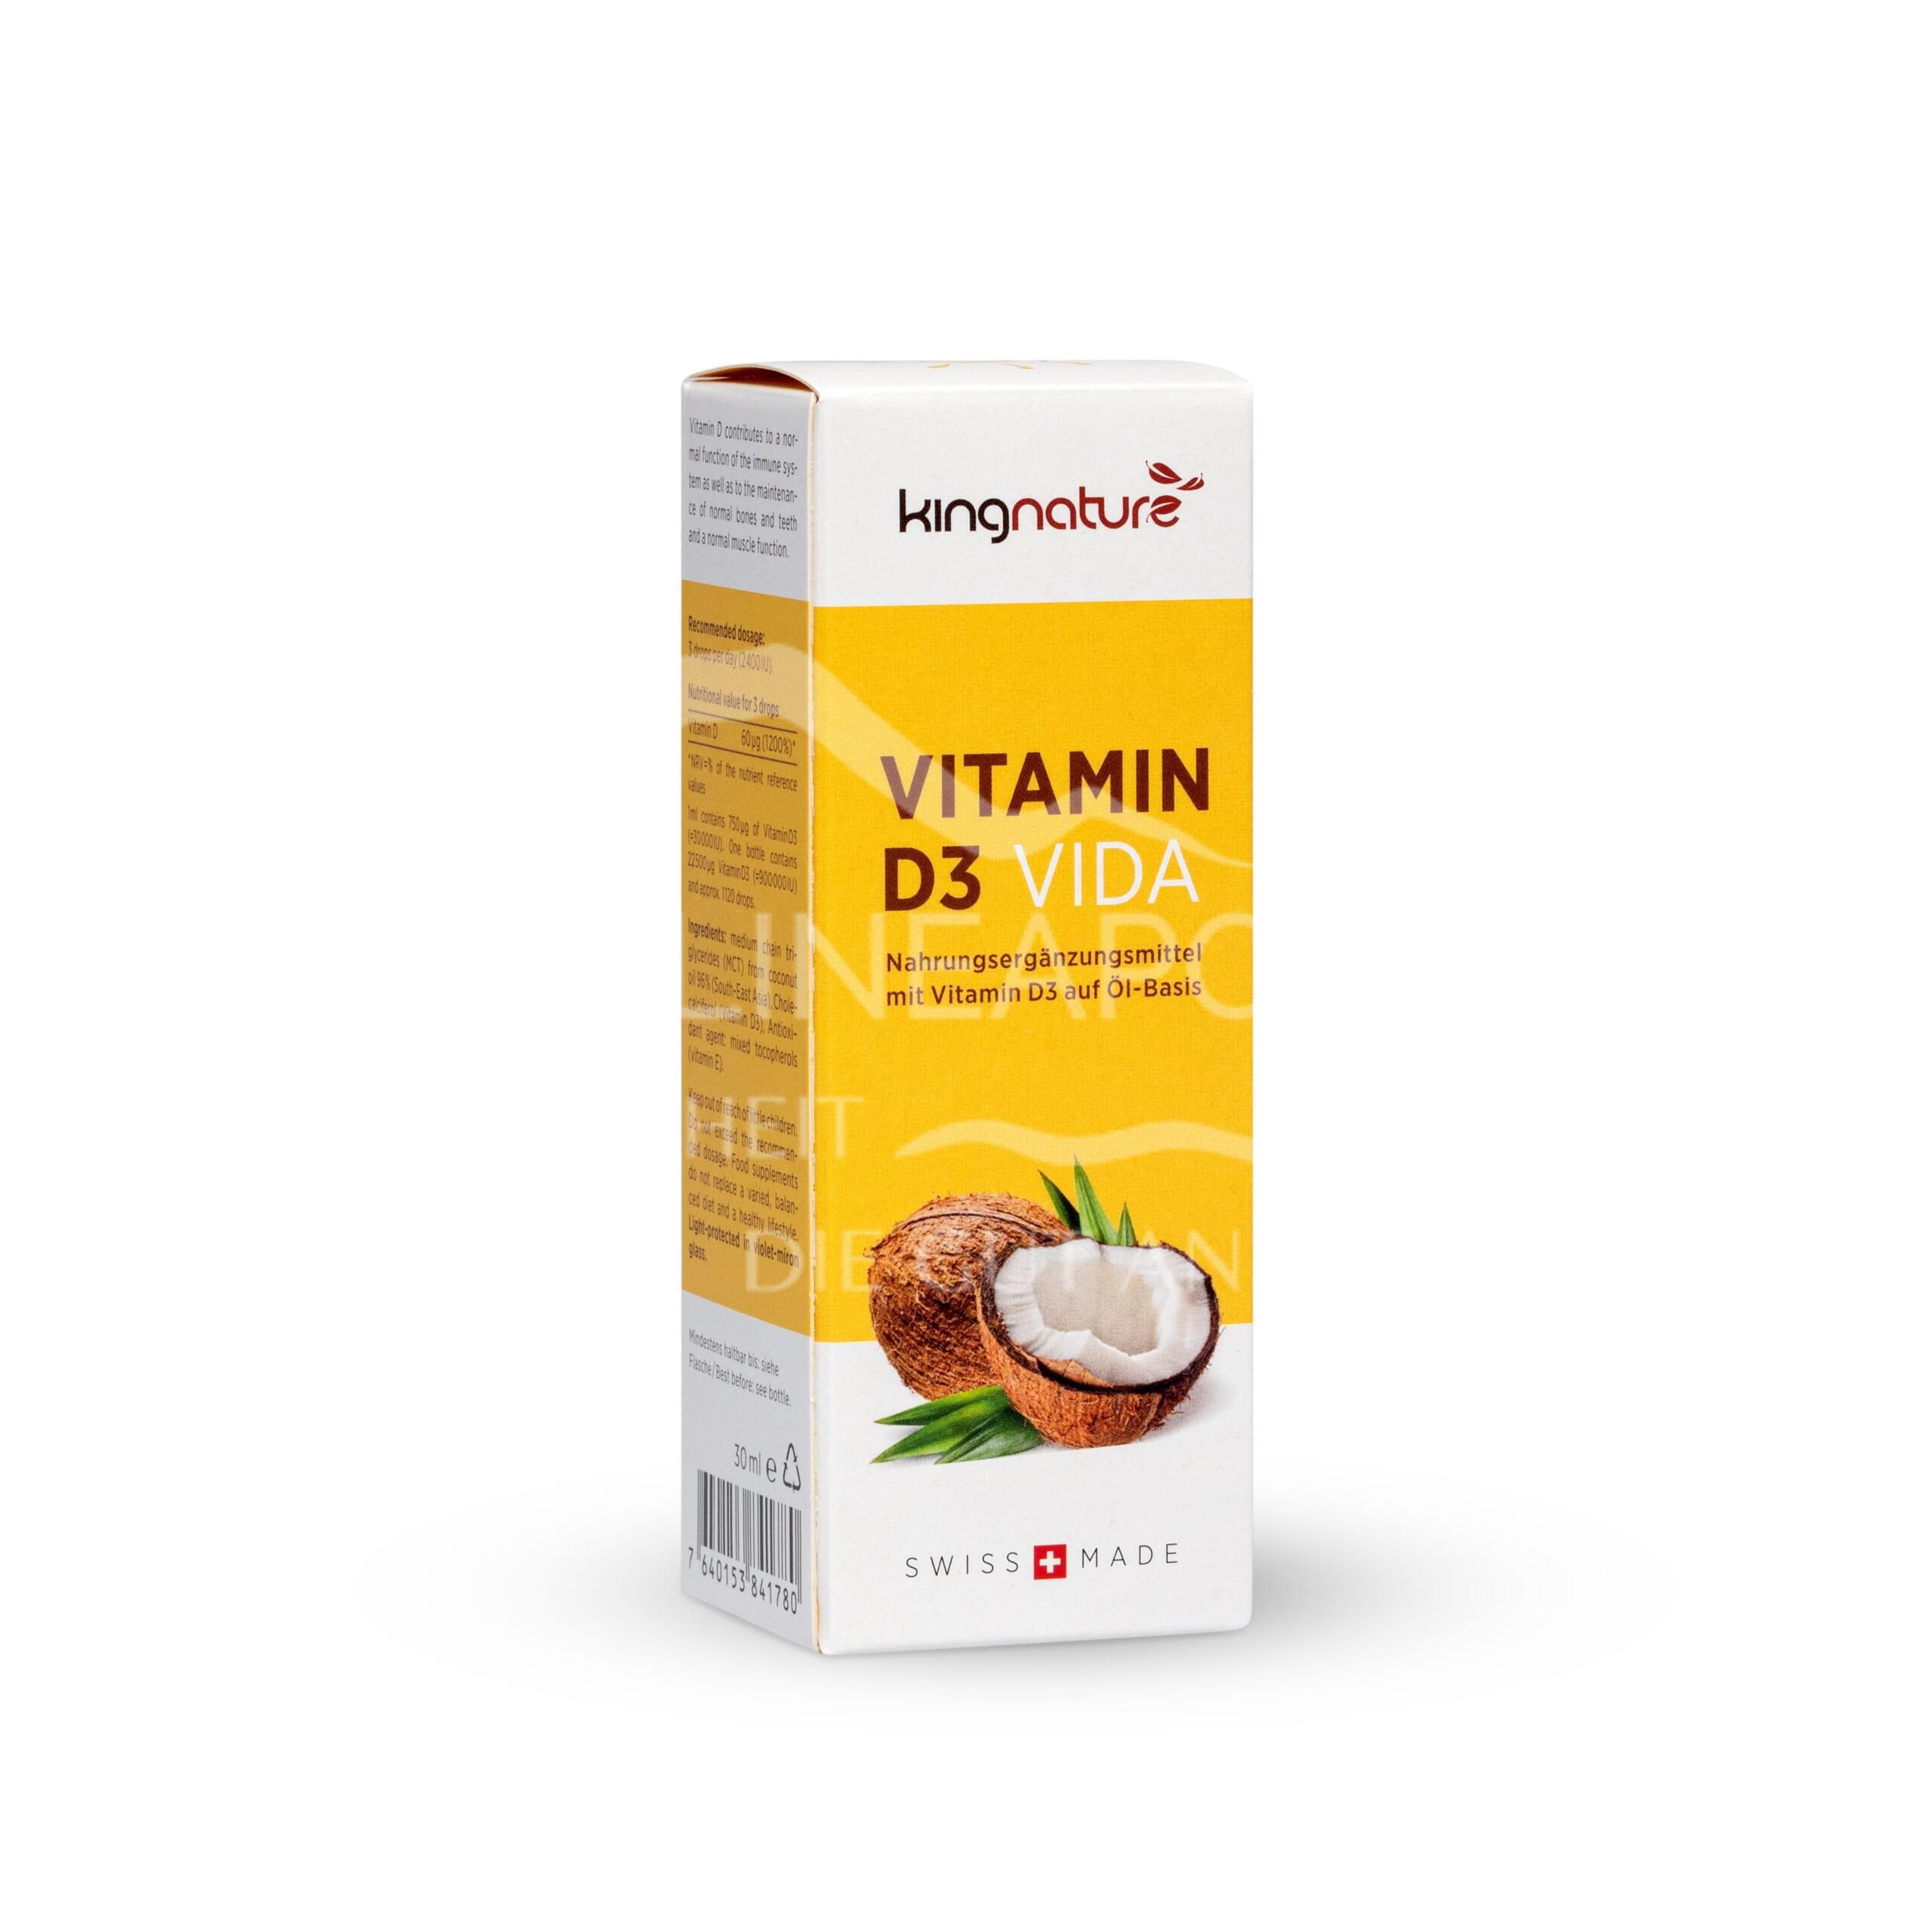 Kingnature Vitamin D3 Vida Tropfen